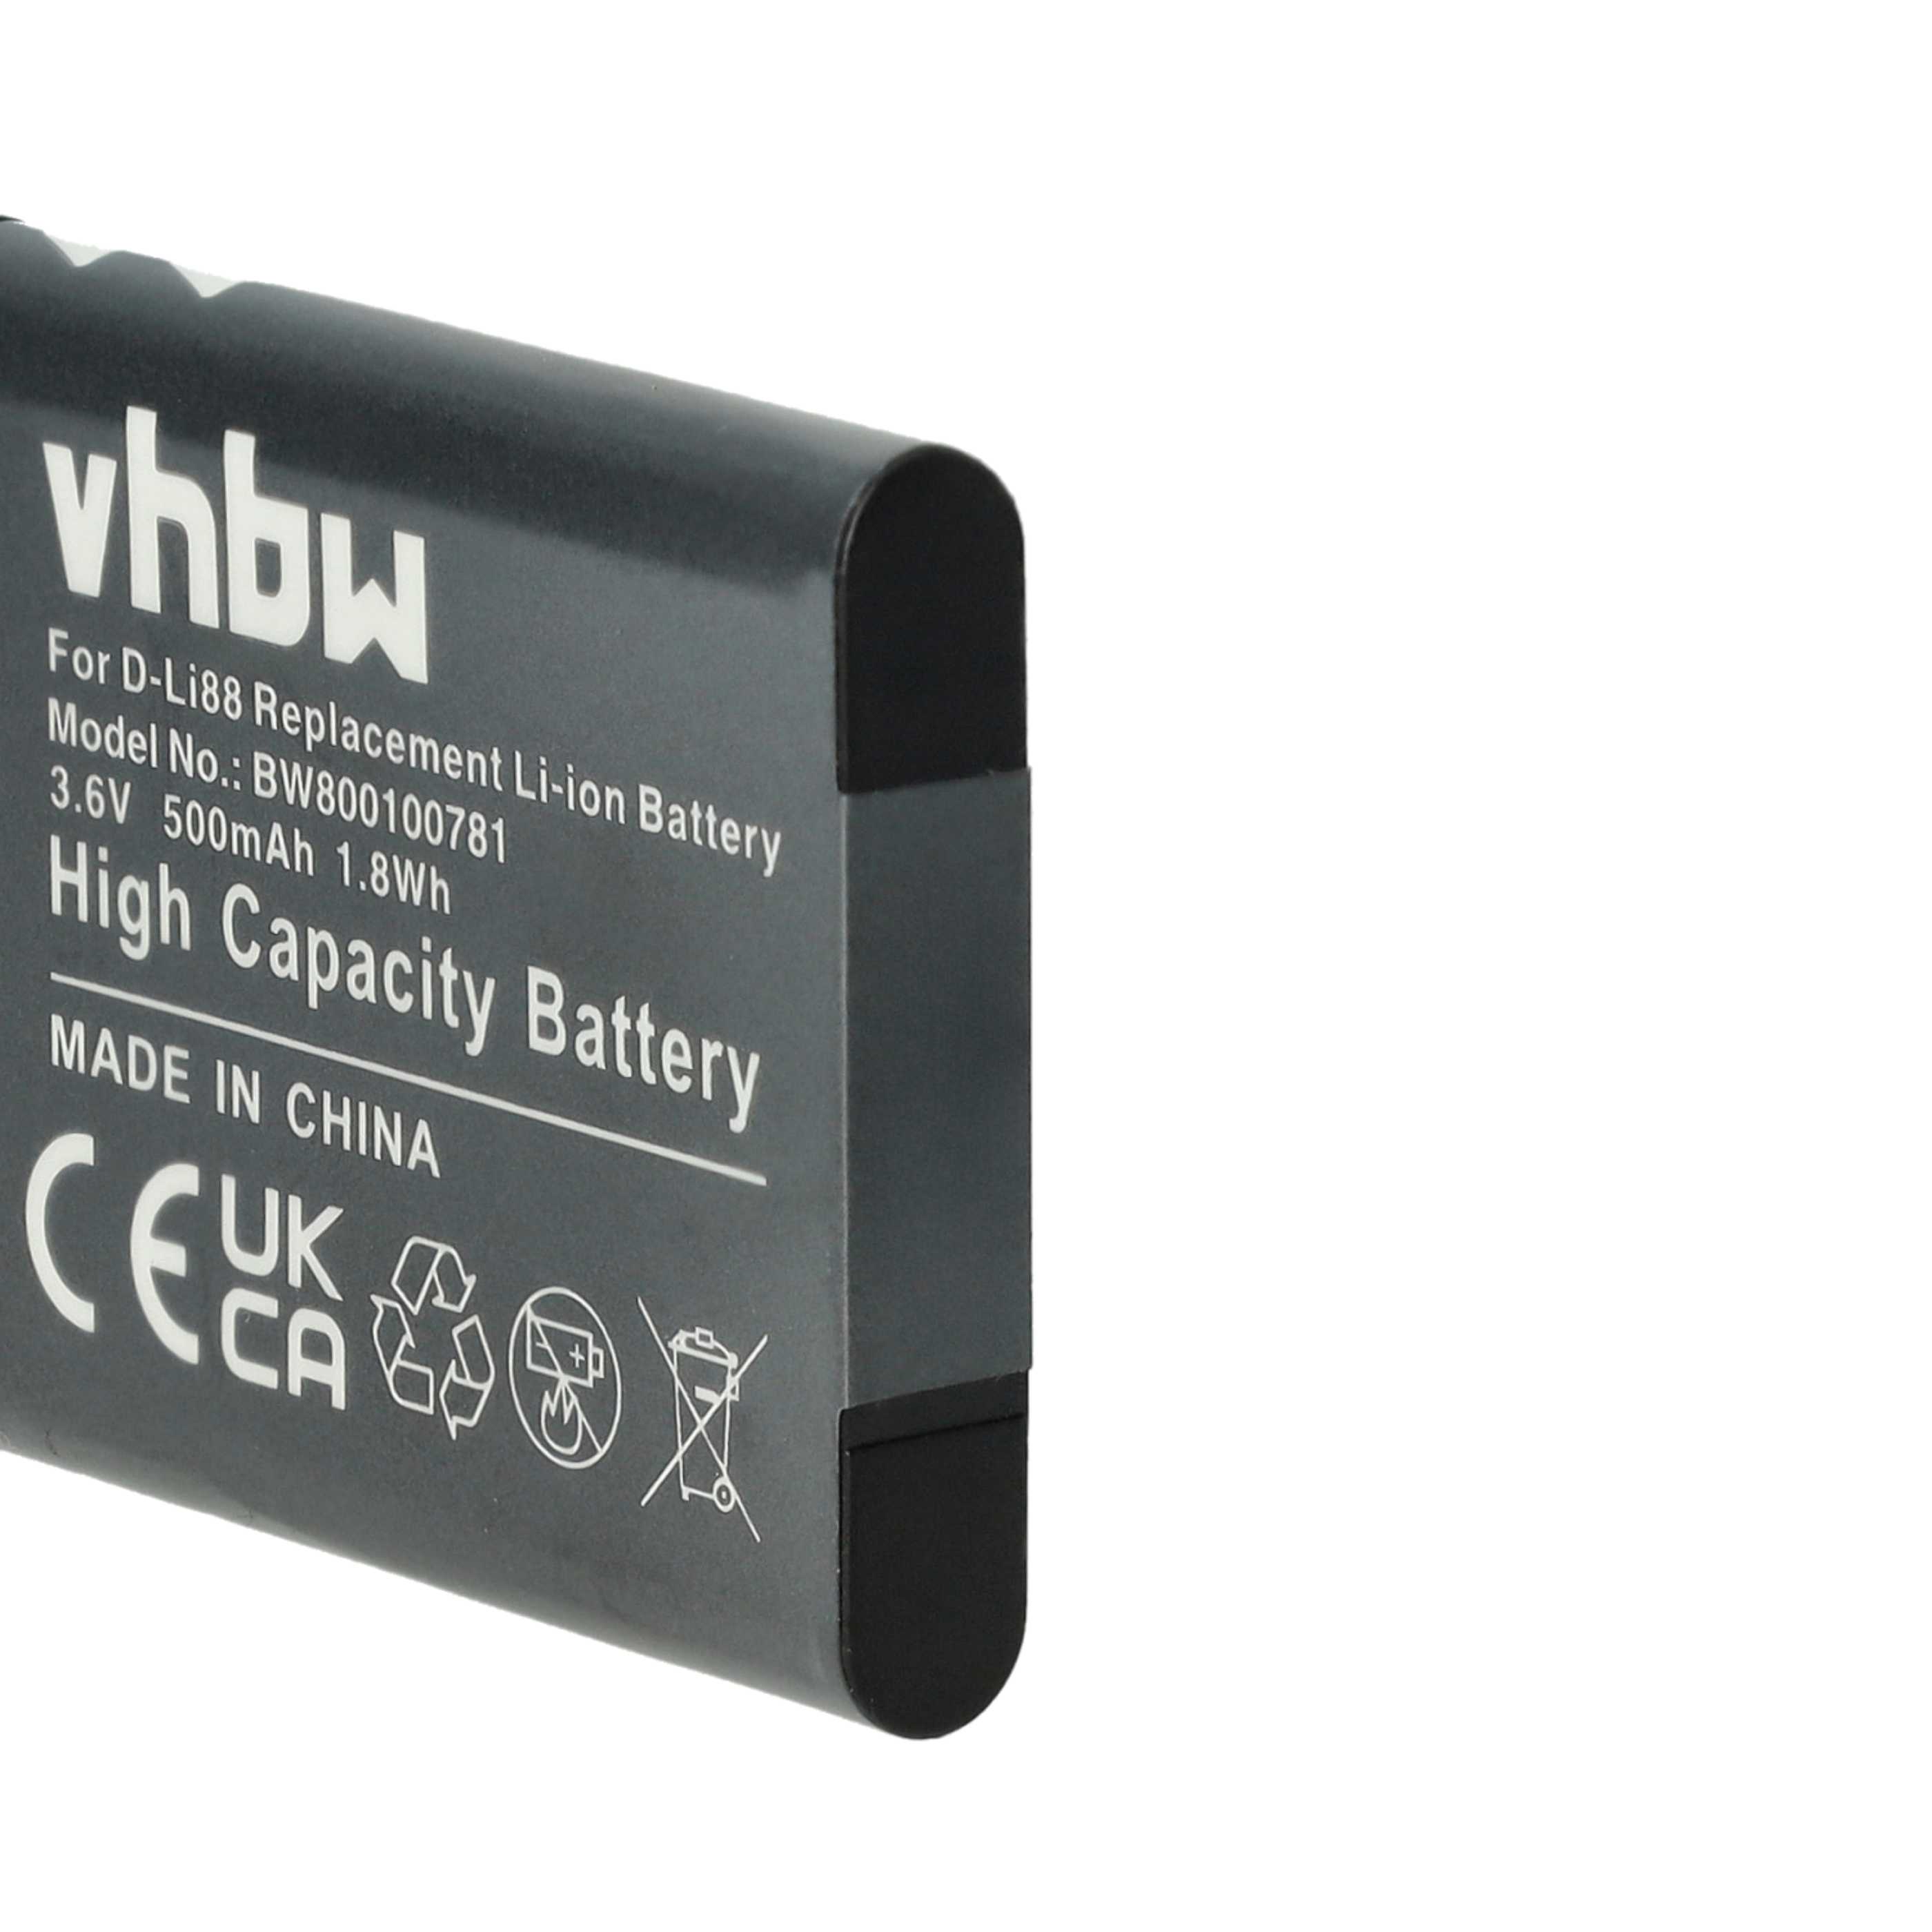 Batterie remplace Panasonic VW-VBX070E, VW-VBX070 pour appareil photo - 500mAh 3,6V Li-ion